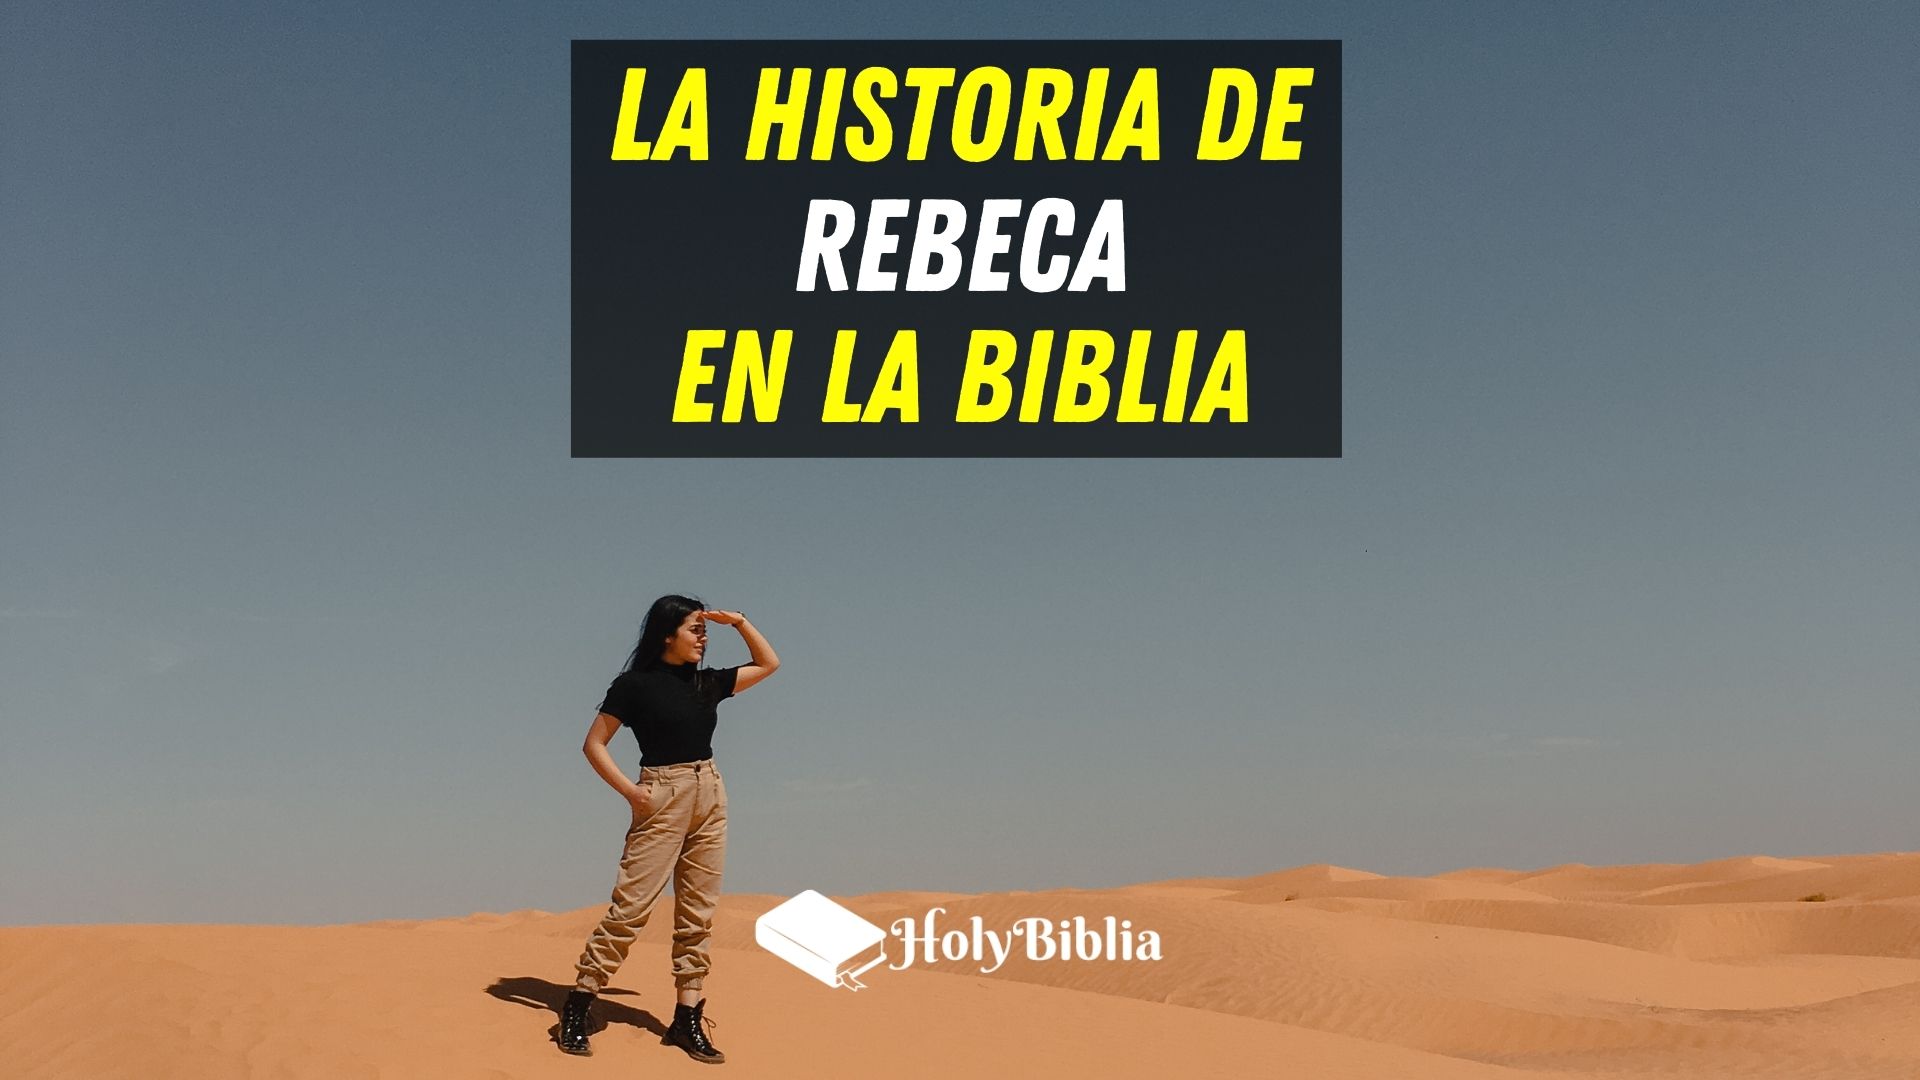 ᐅ ✔️ ¿Quién era Rebeca en la Biblia? |